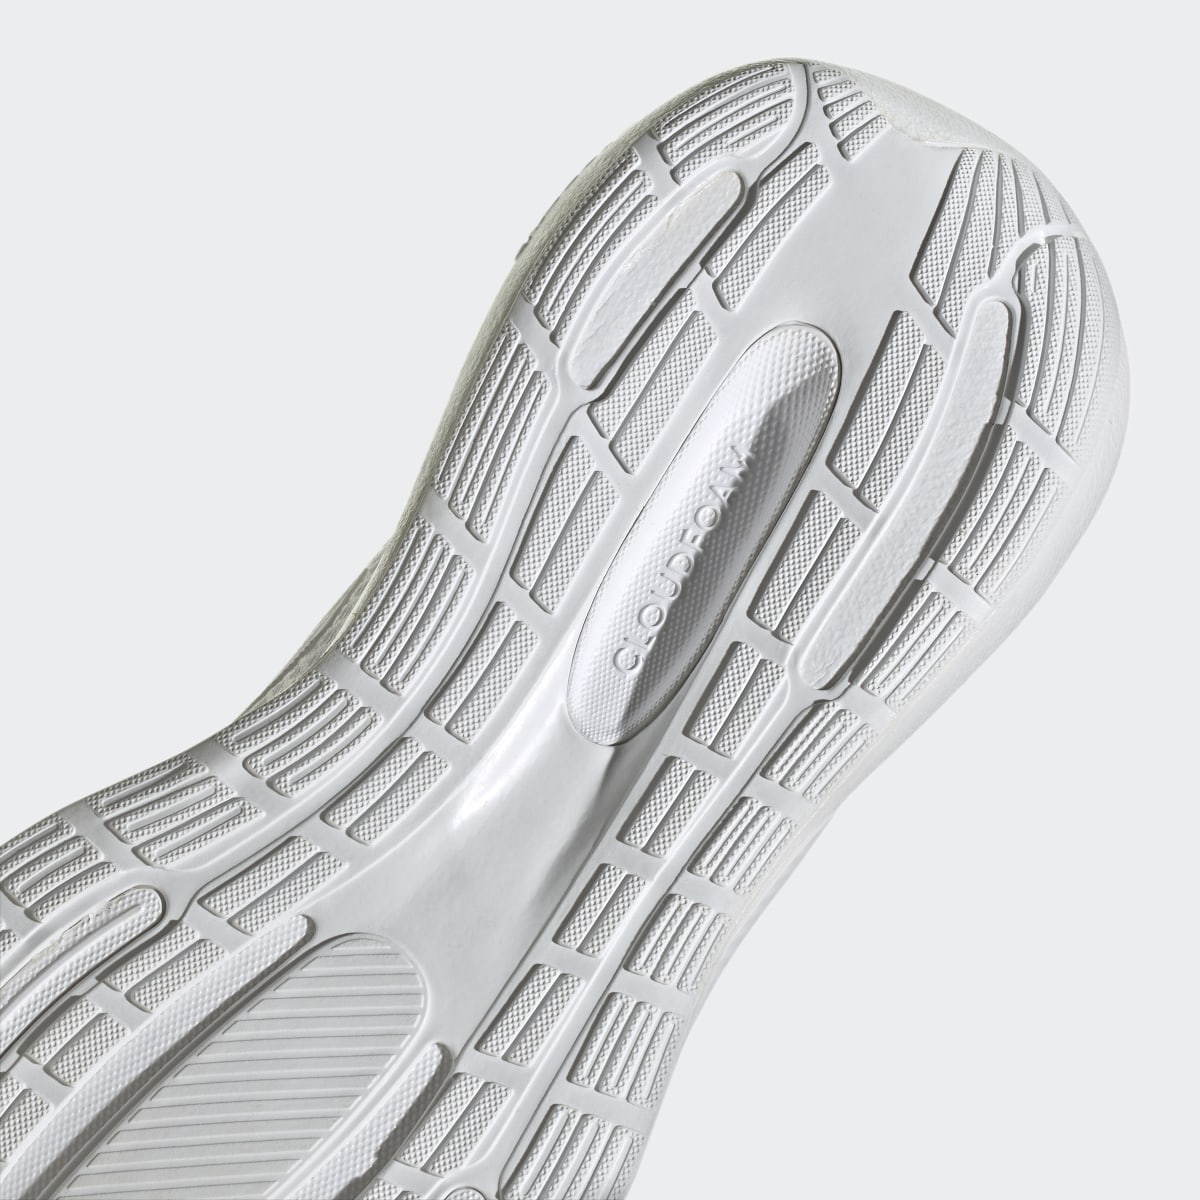 Adidas Buty Runfalcon 3.0. 10